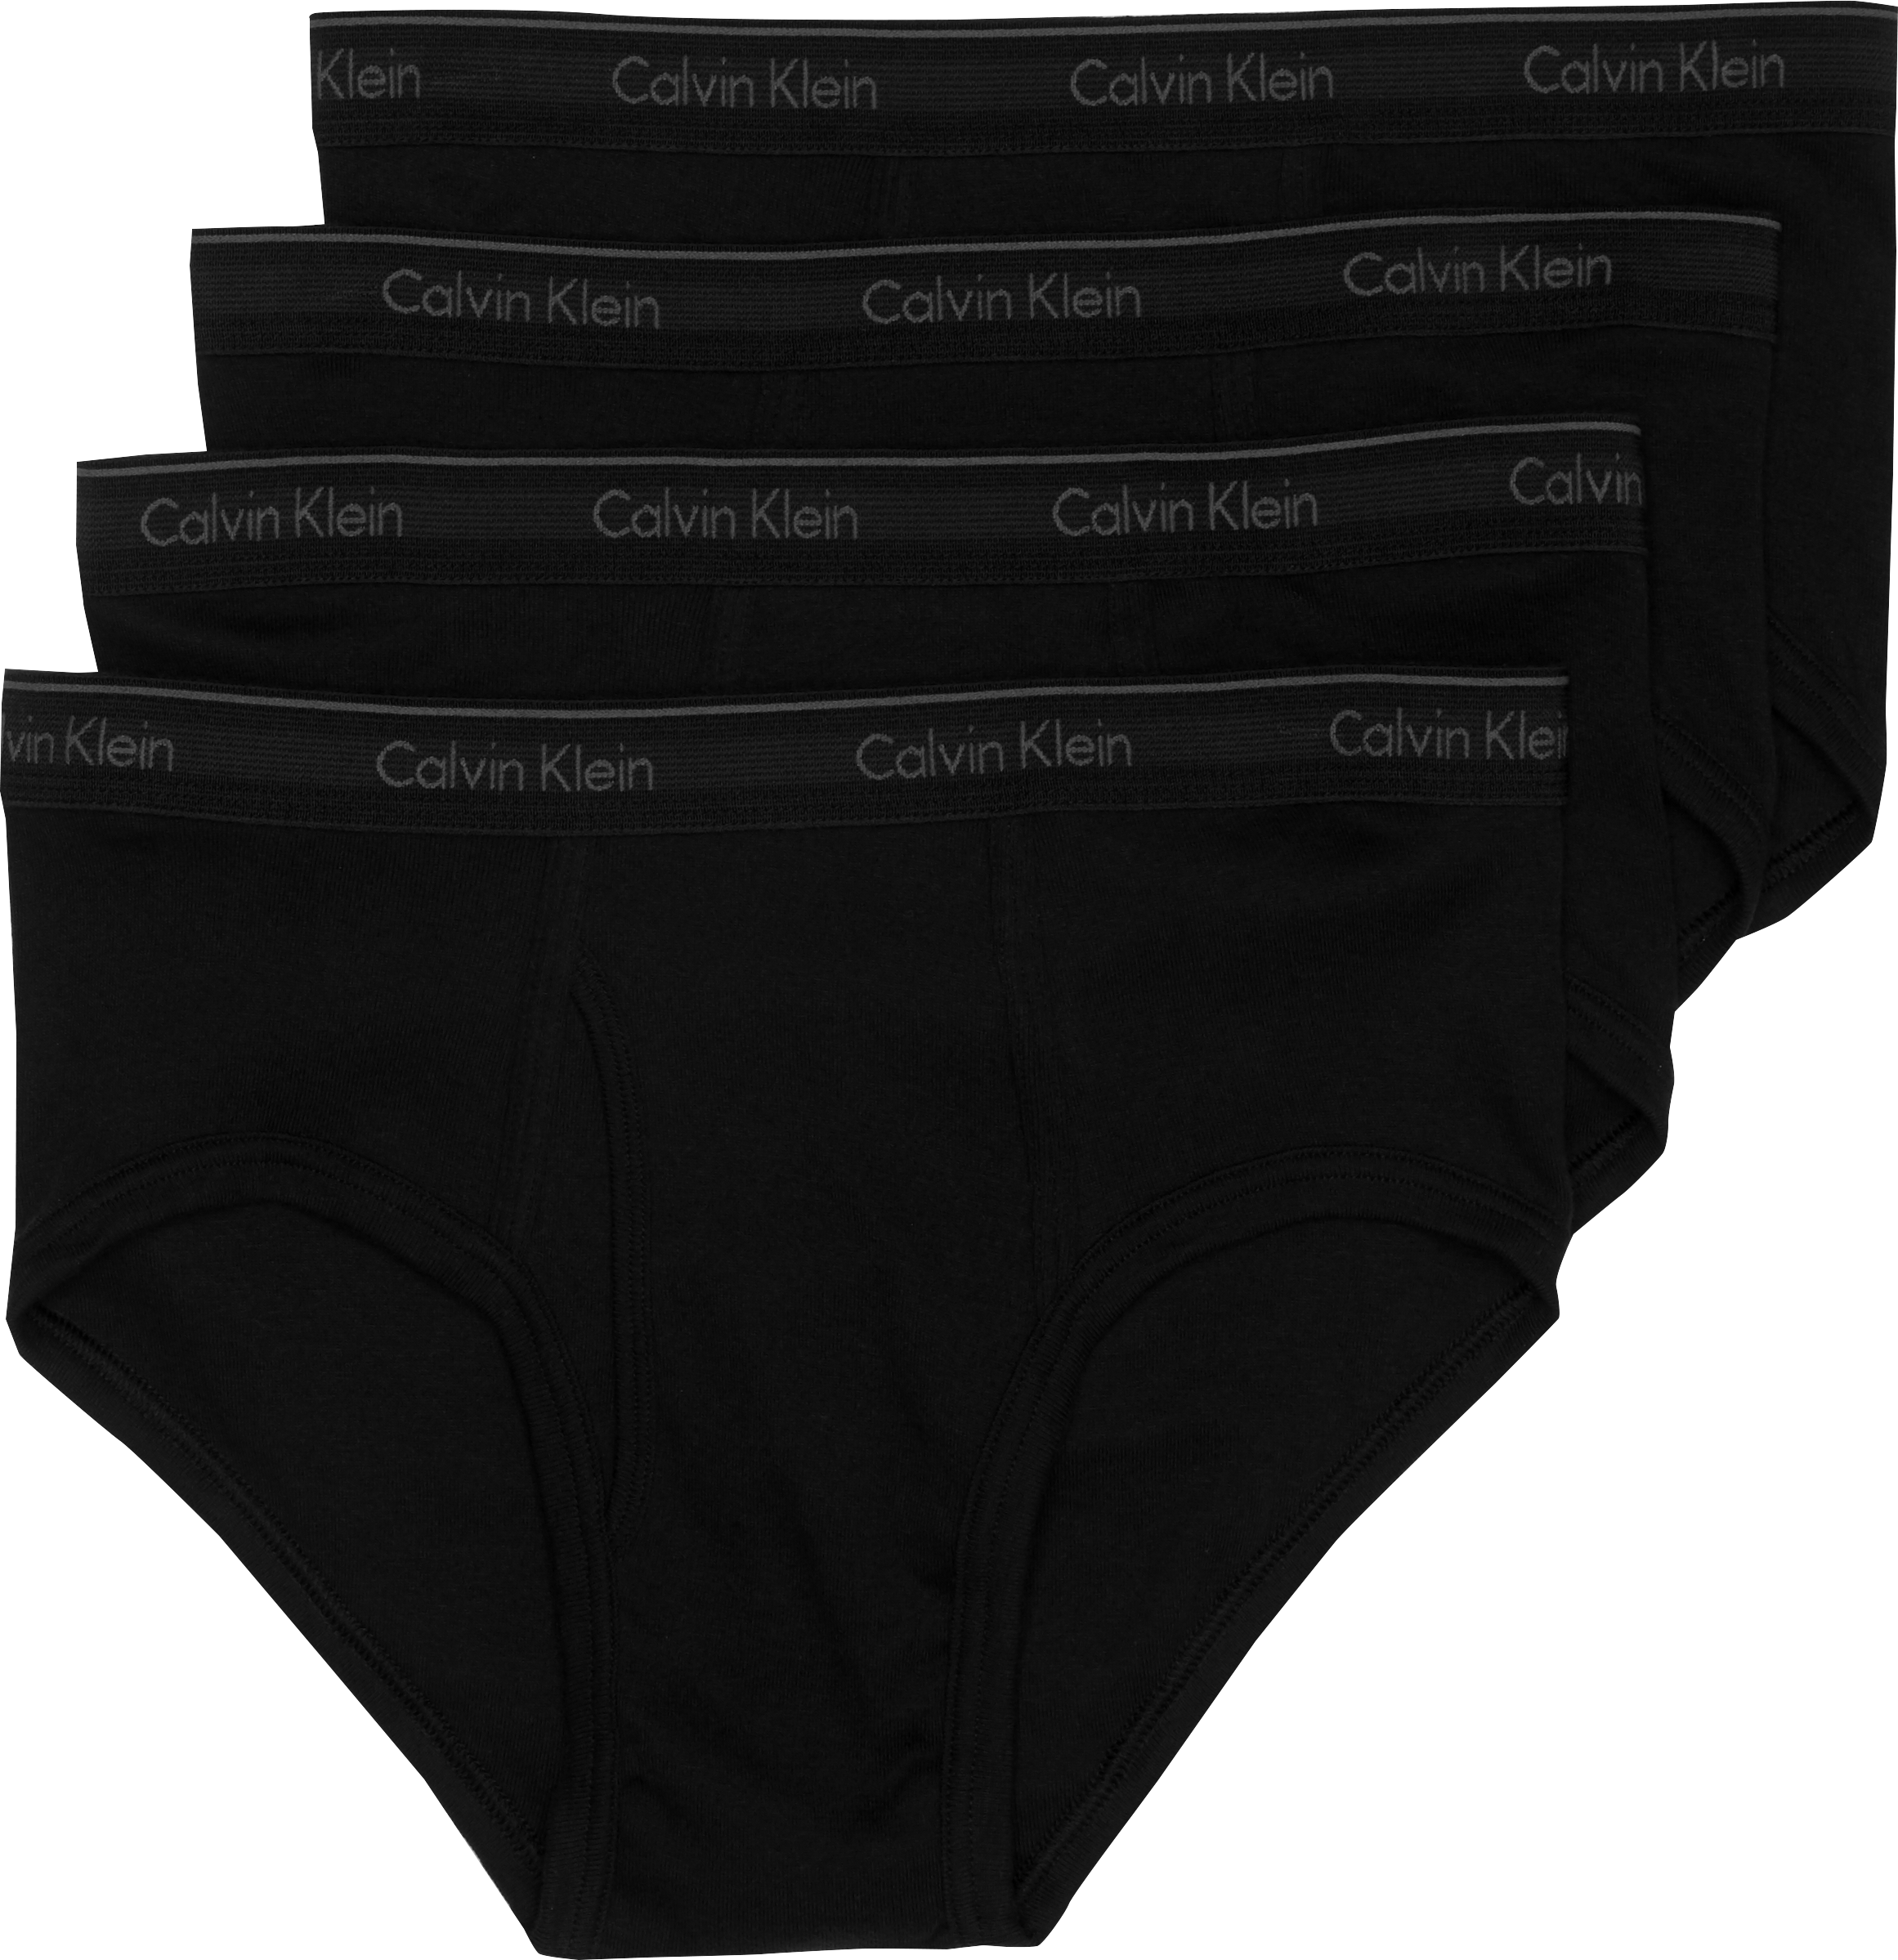 Calvin Klein Black Cotton Classic Hip Briefs, 4-Pack - Men's Sale | Men ...